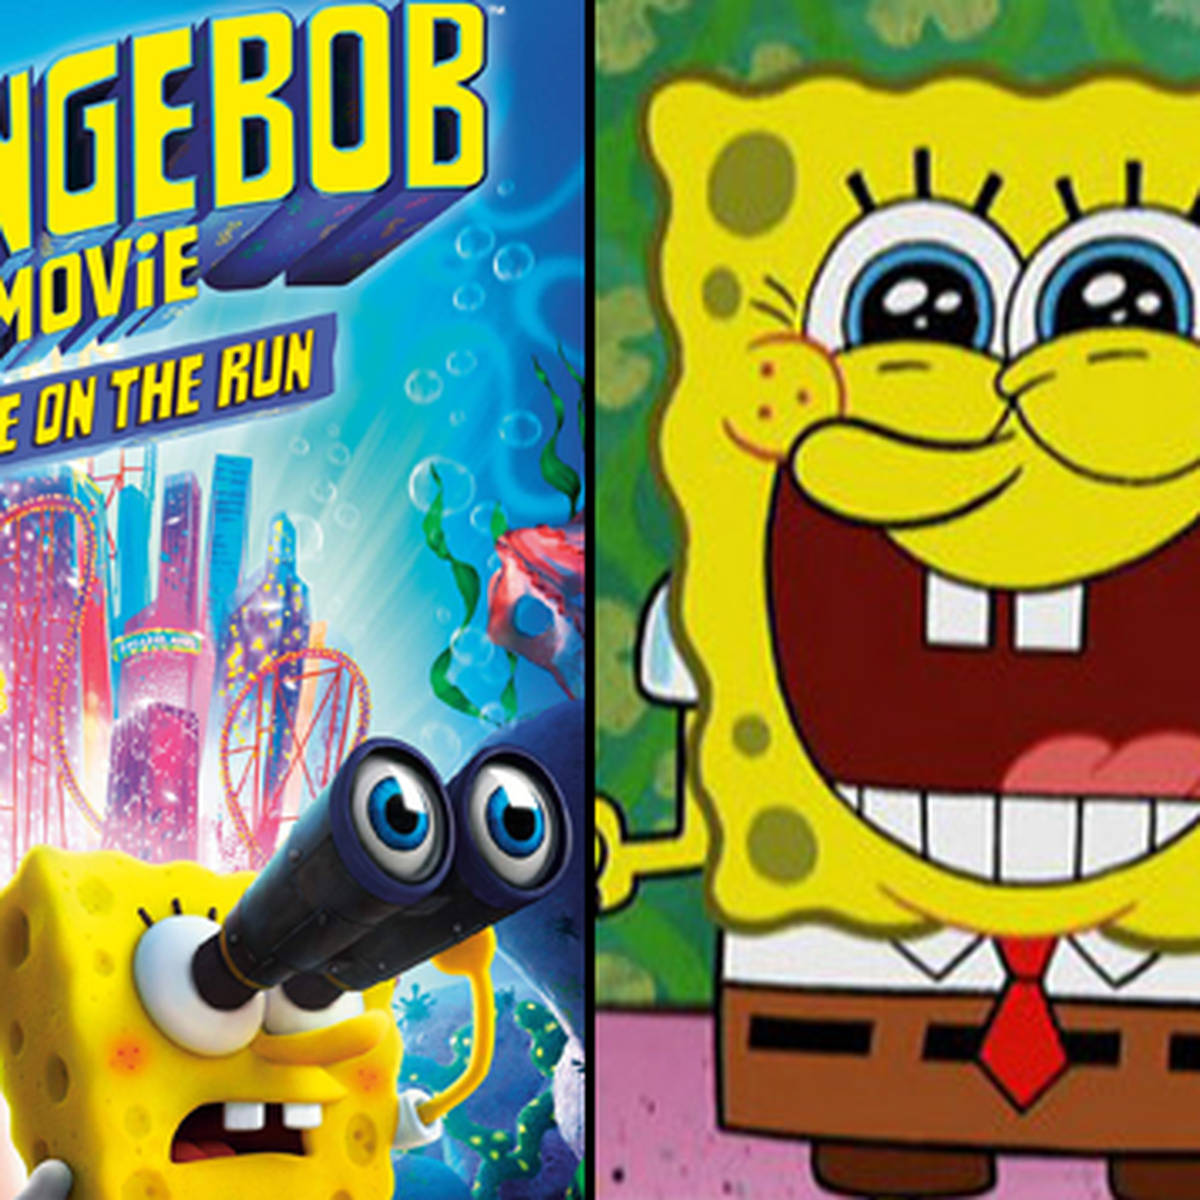 Keanu Reeves Spongebob Movie Wallpapers